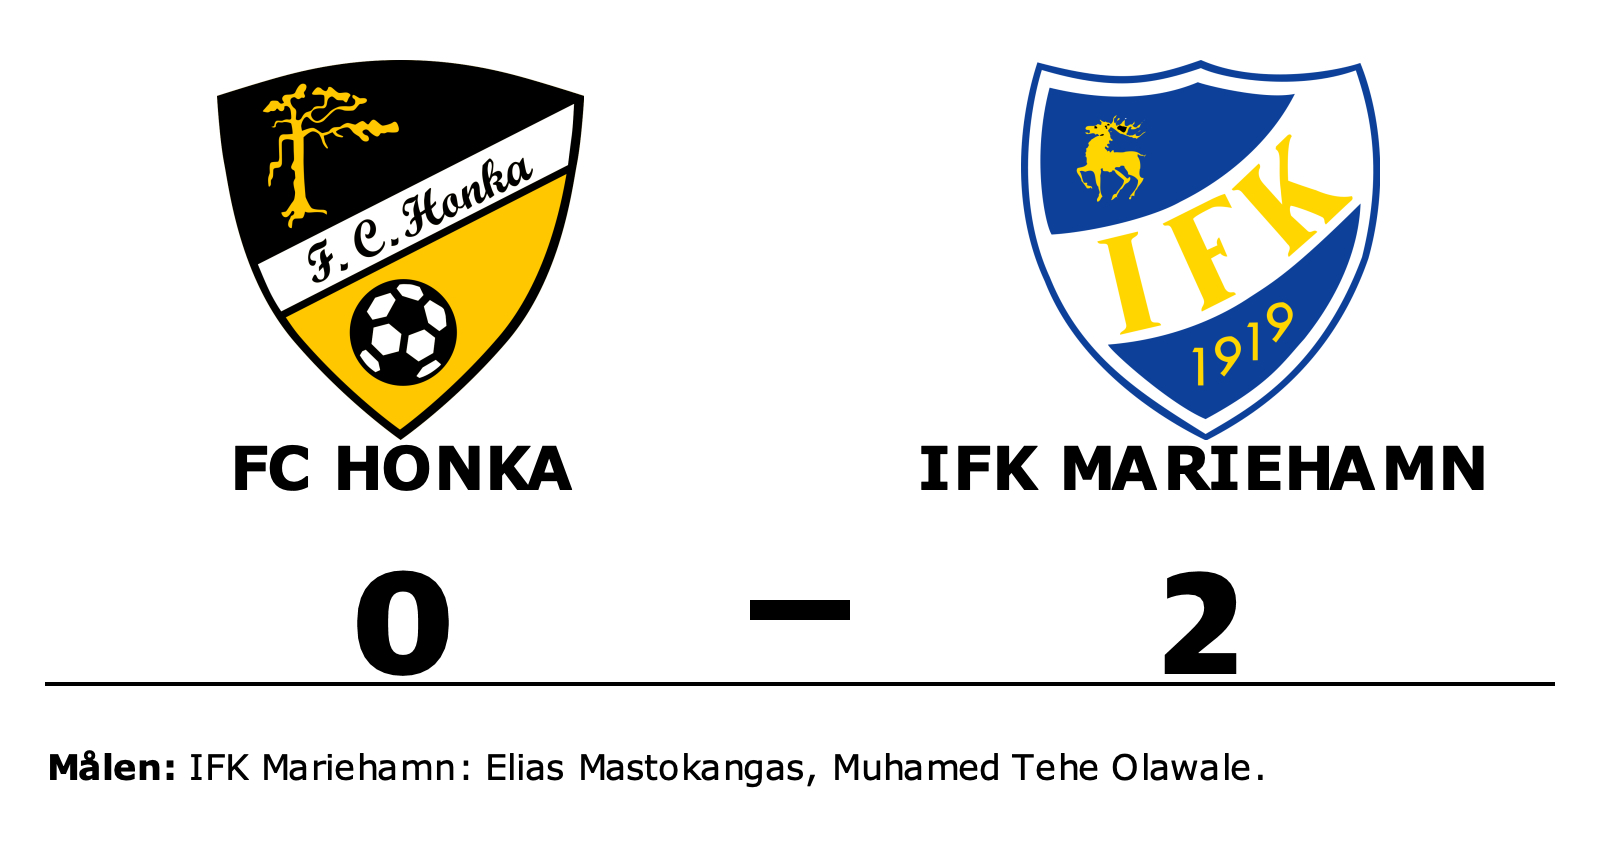 FC Honka förlorade mot IFK Mariehamn